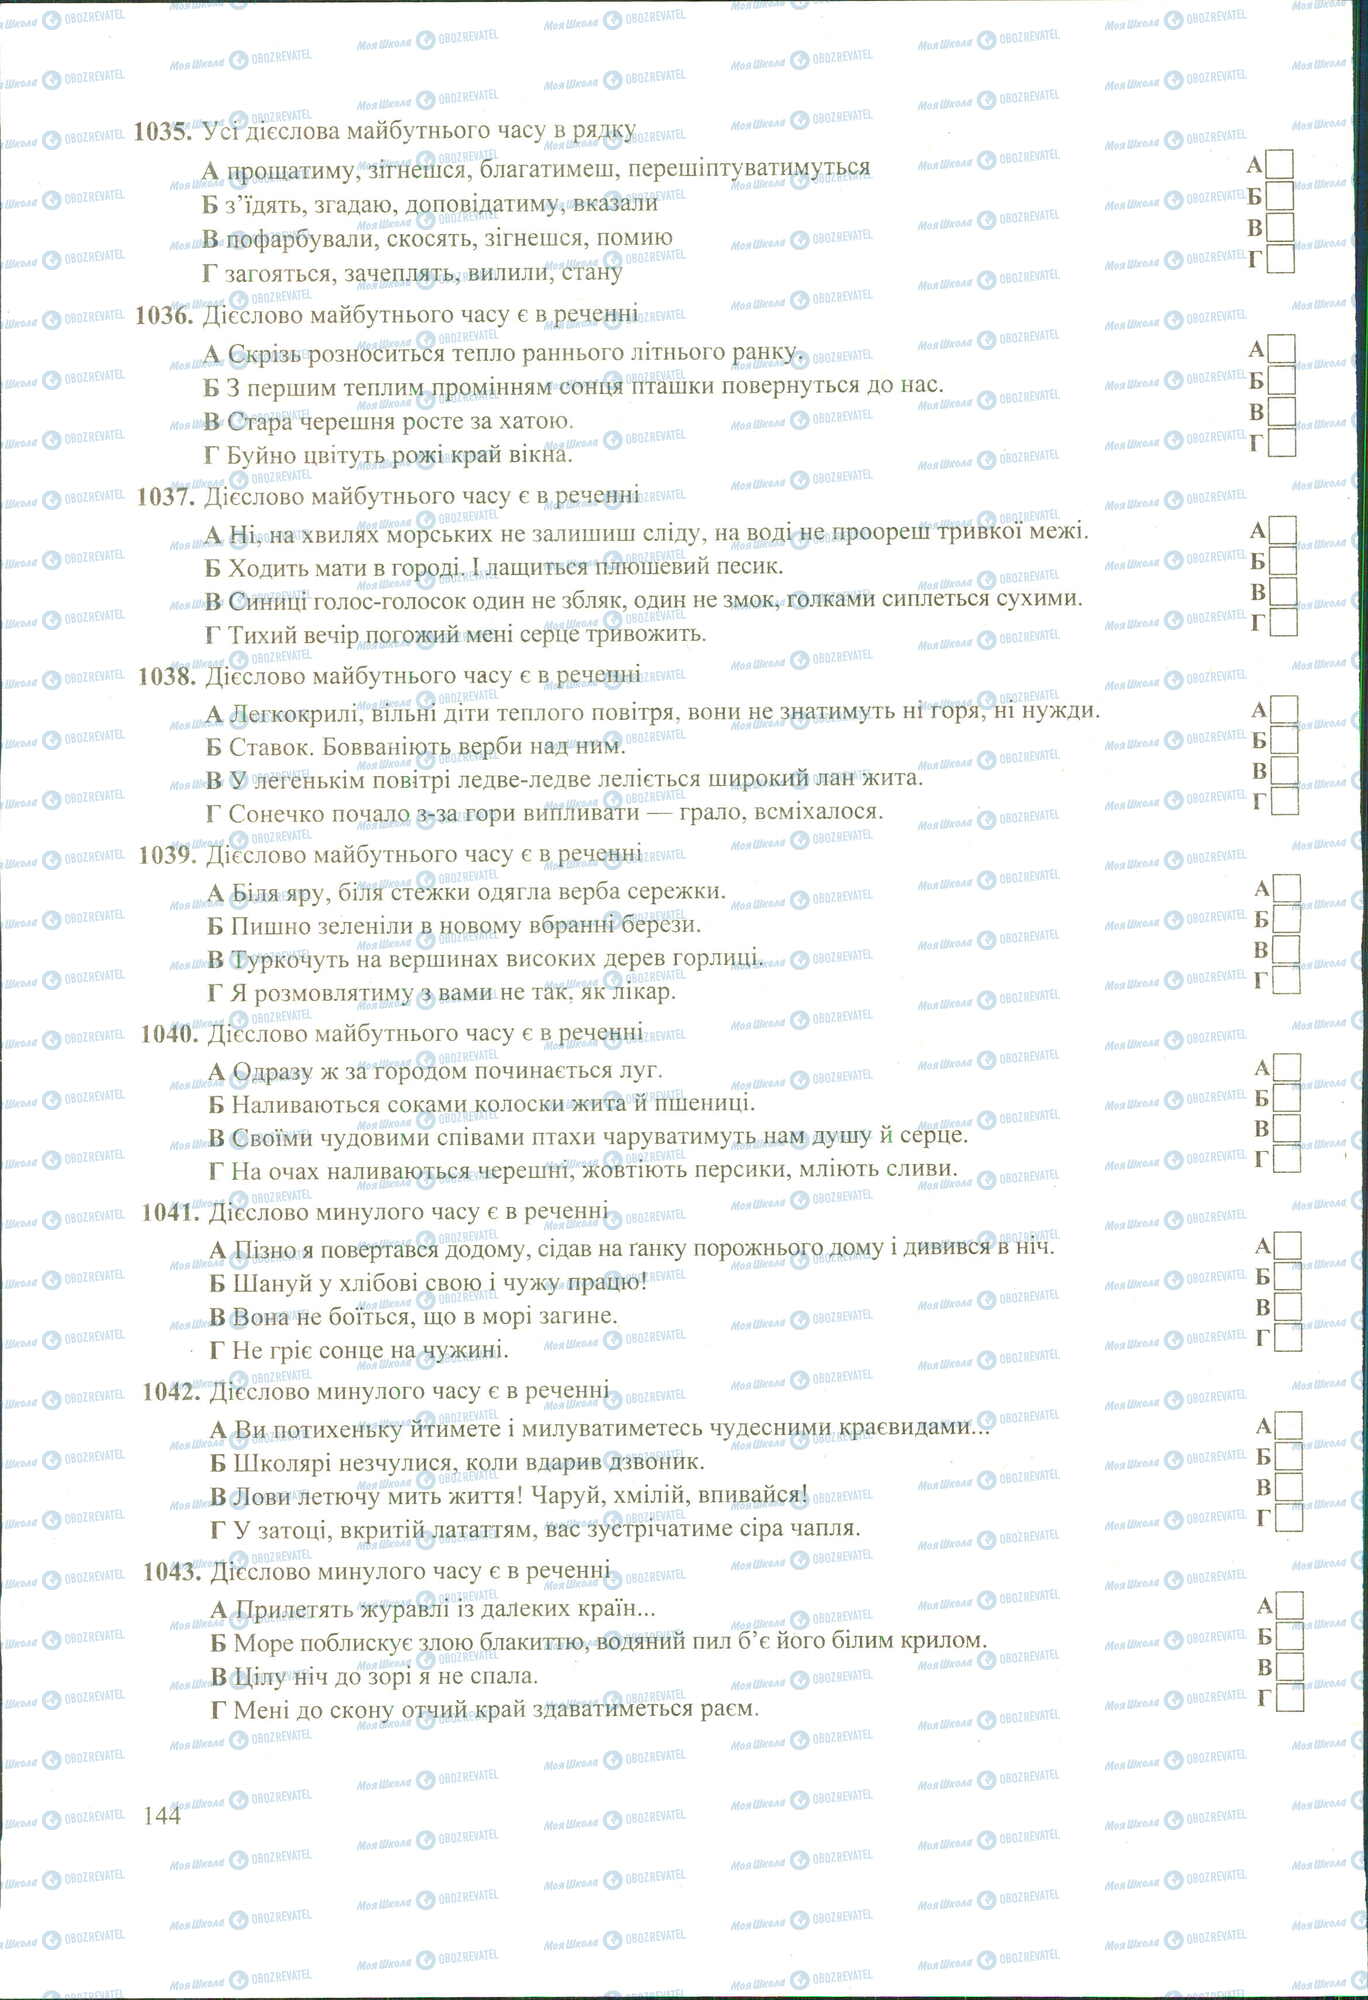 ЗНО Укр мова 11 класс страница 1035-1043